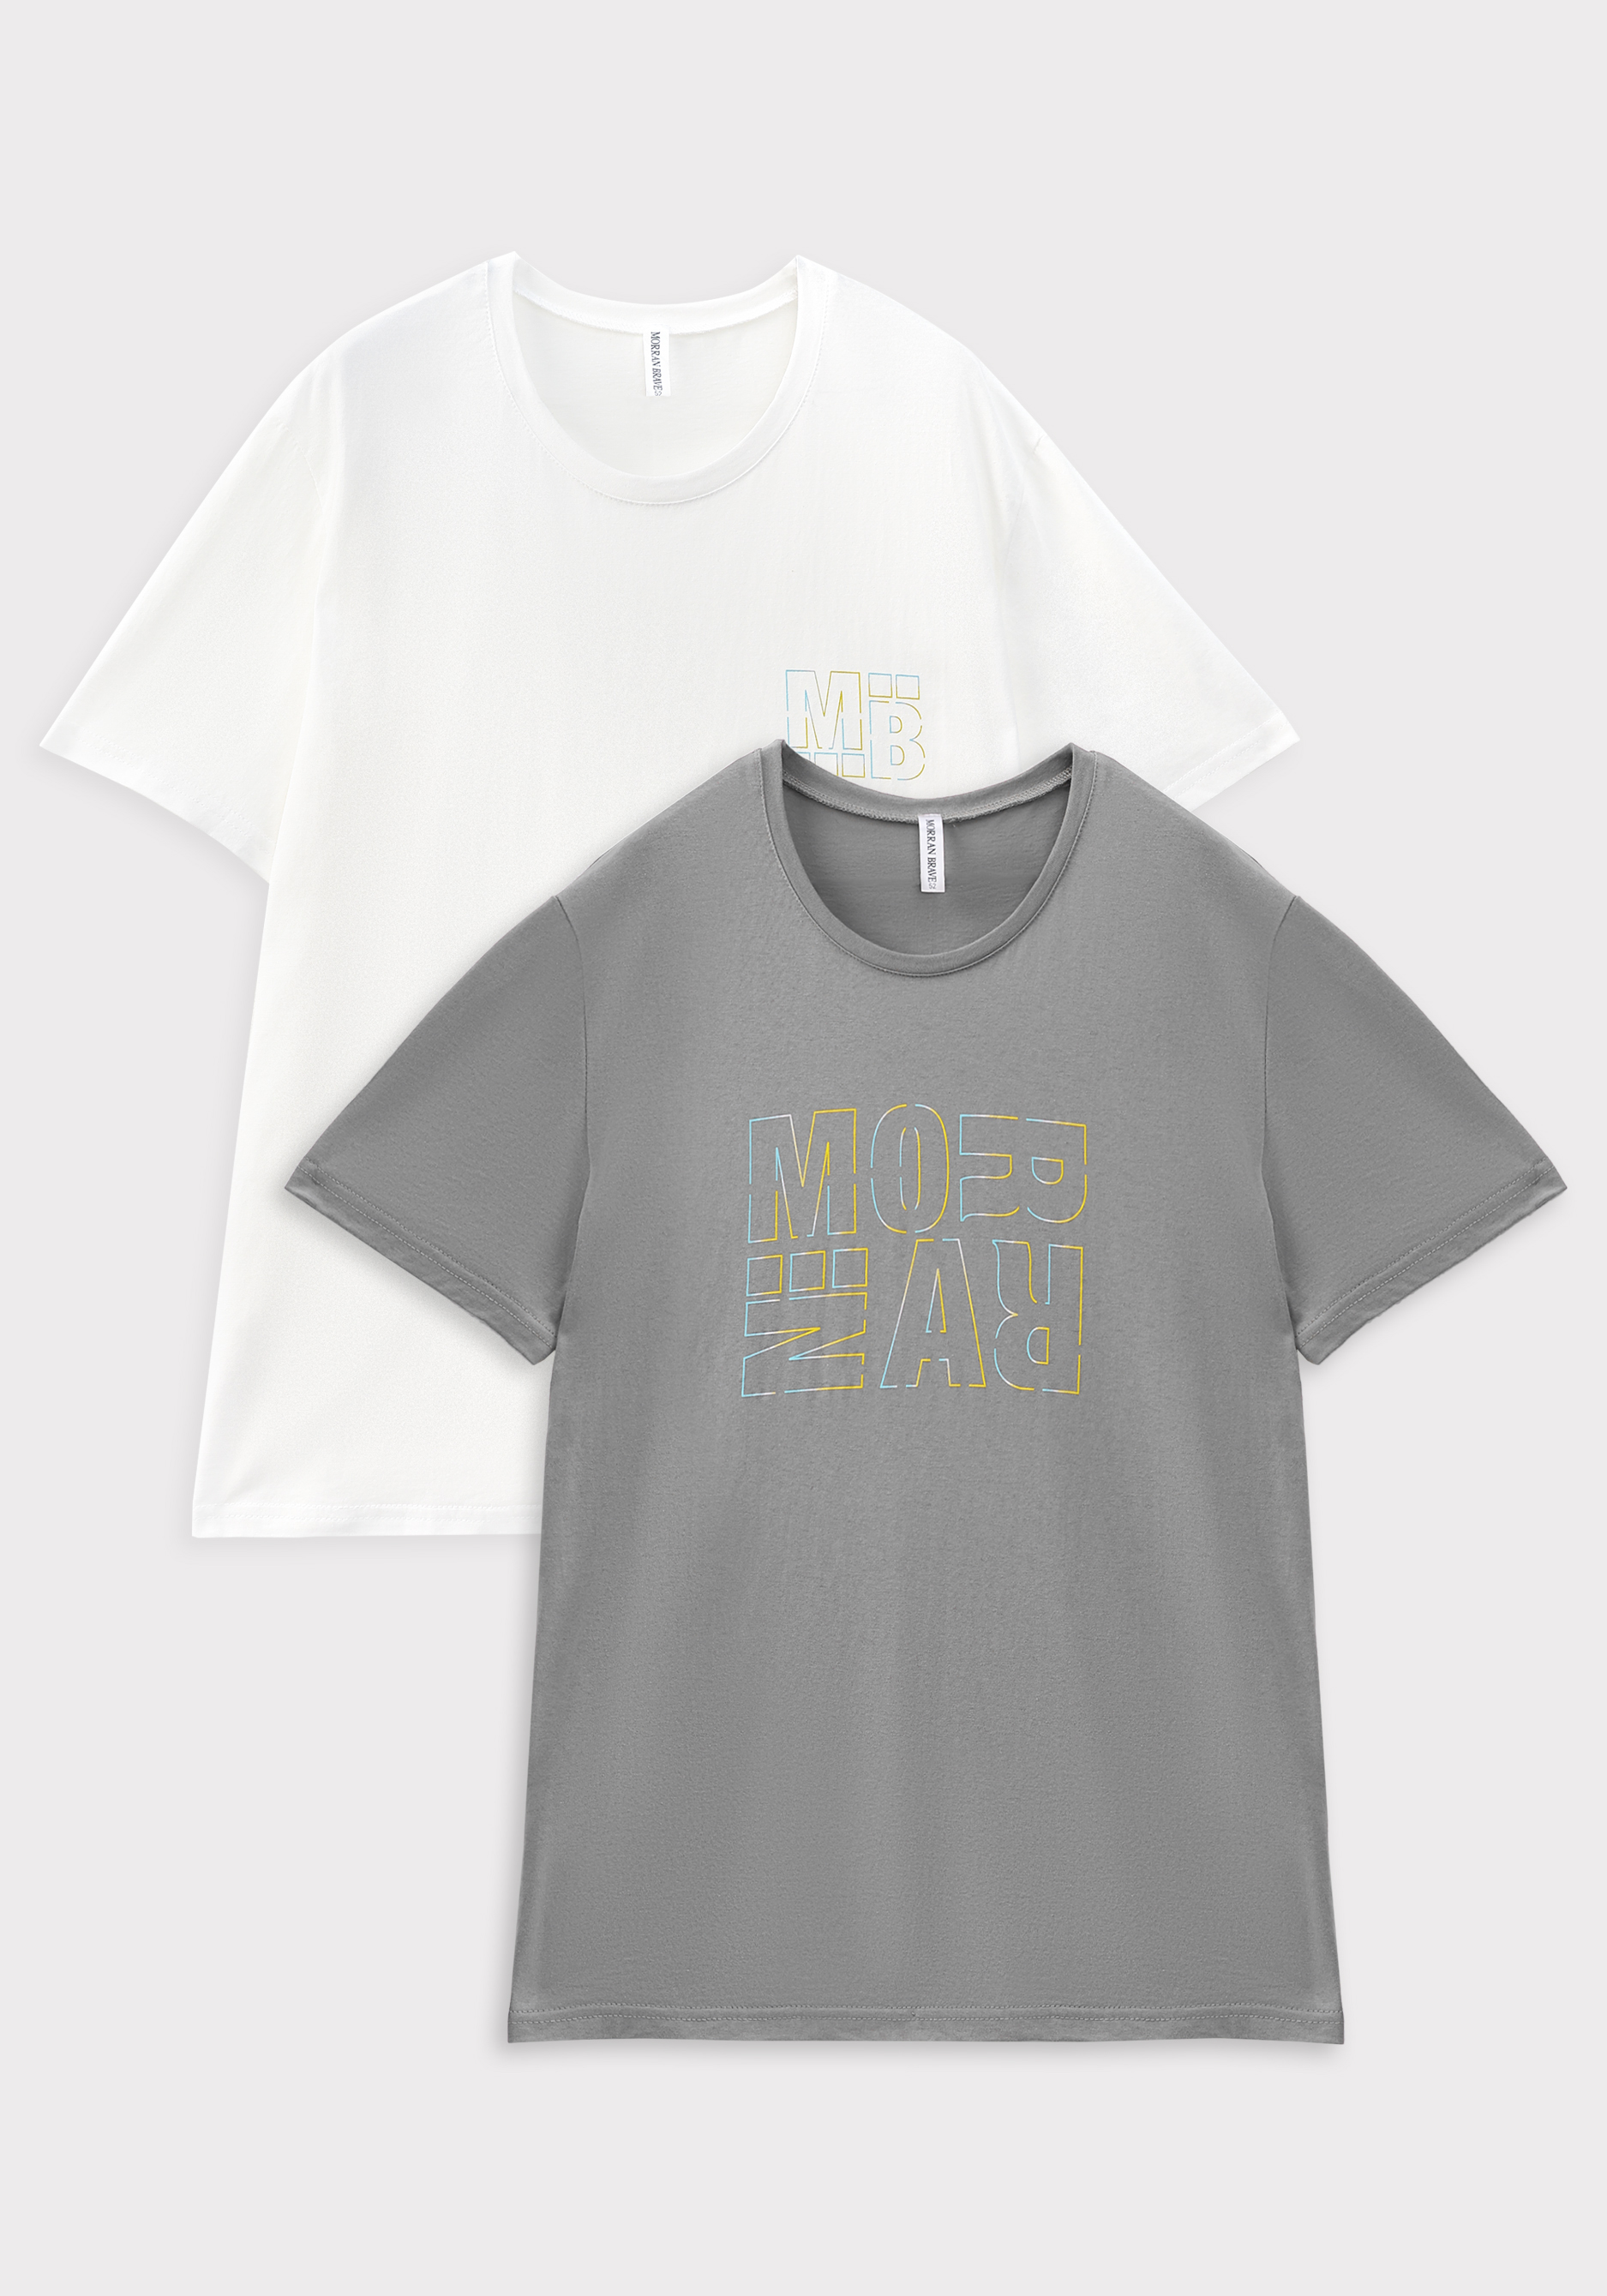 Комплект футболок с лаконичным принтом, 2 шт. Morran Brave, цвет белый, размер 62